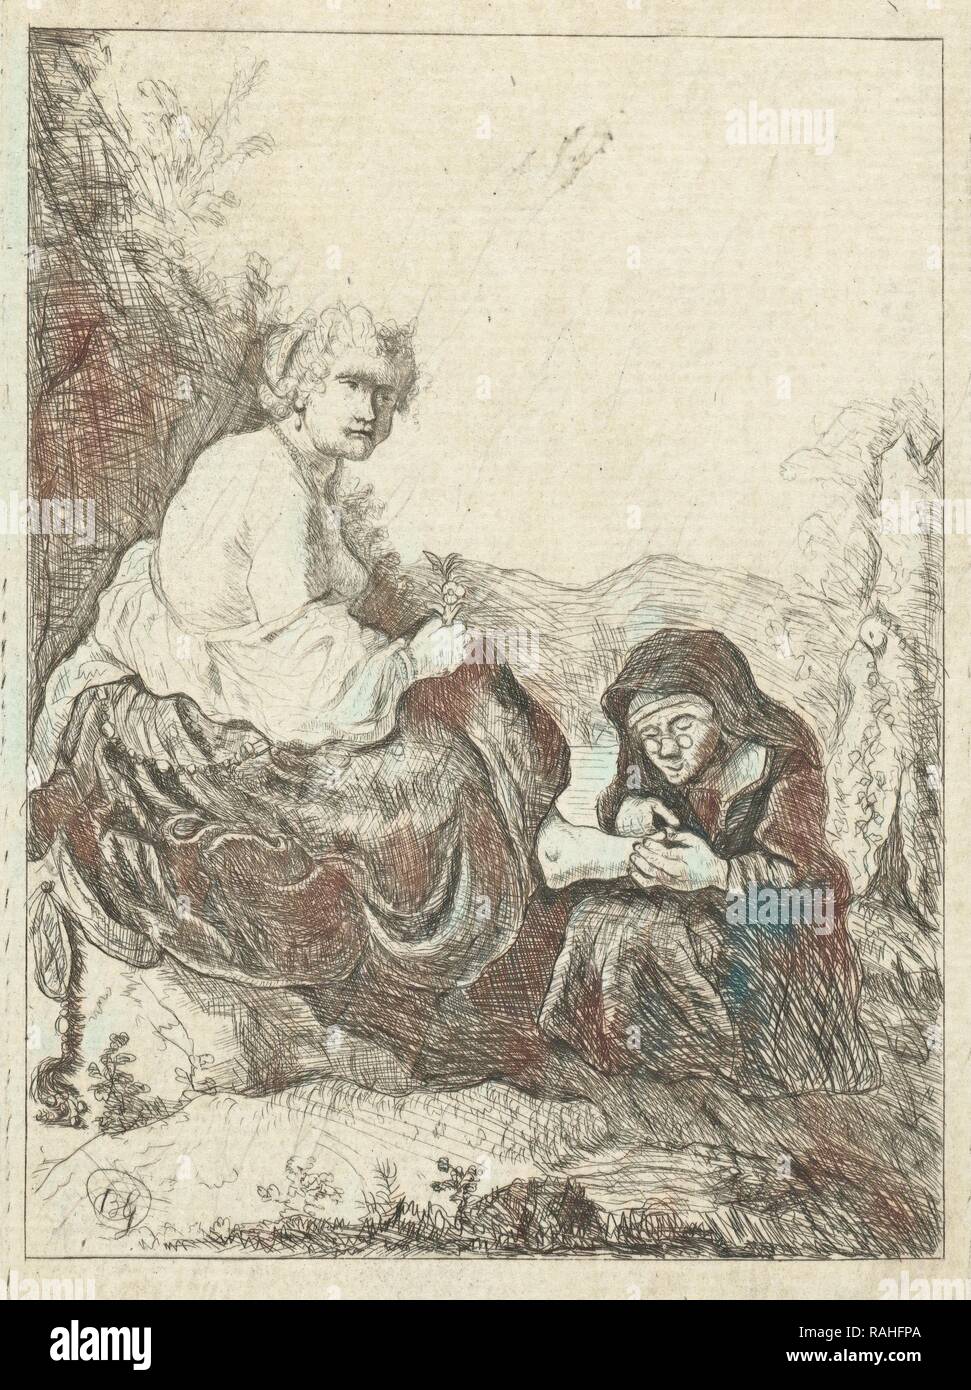 Vecchia donna taglia la toenails della sua padrona, anonimo, 1700 - 1800. Reinventato da Gibon. Arte Classica con un moderno reinventato Foto Stock